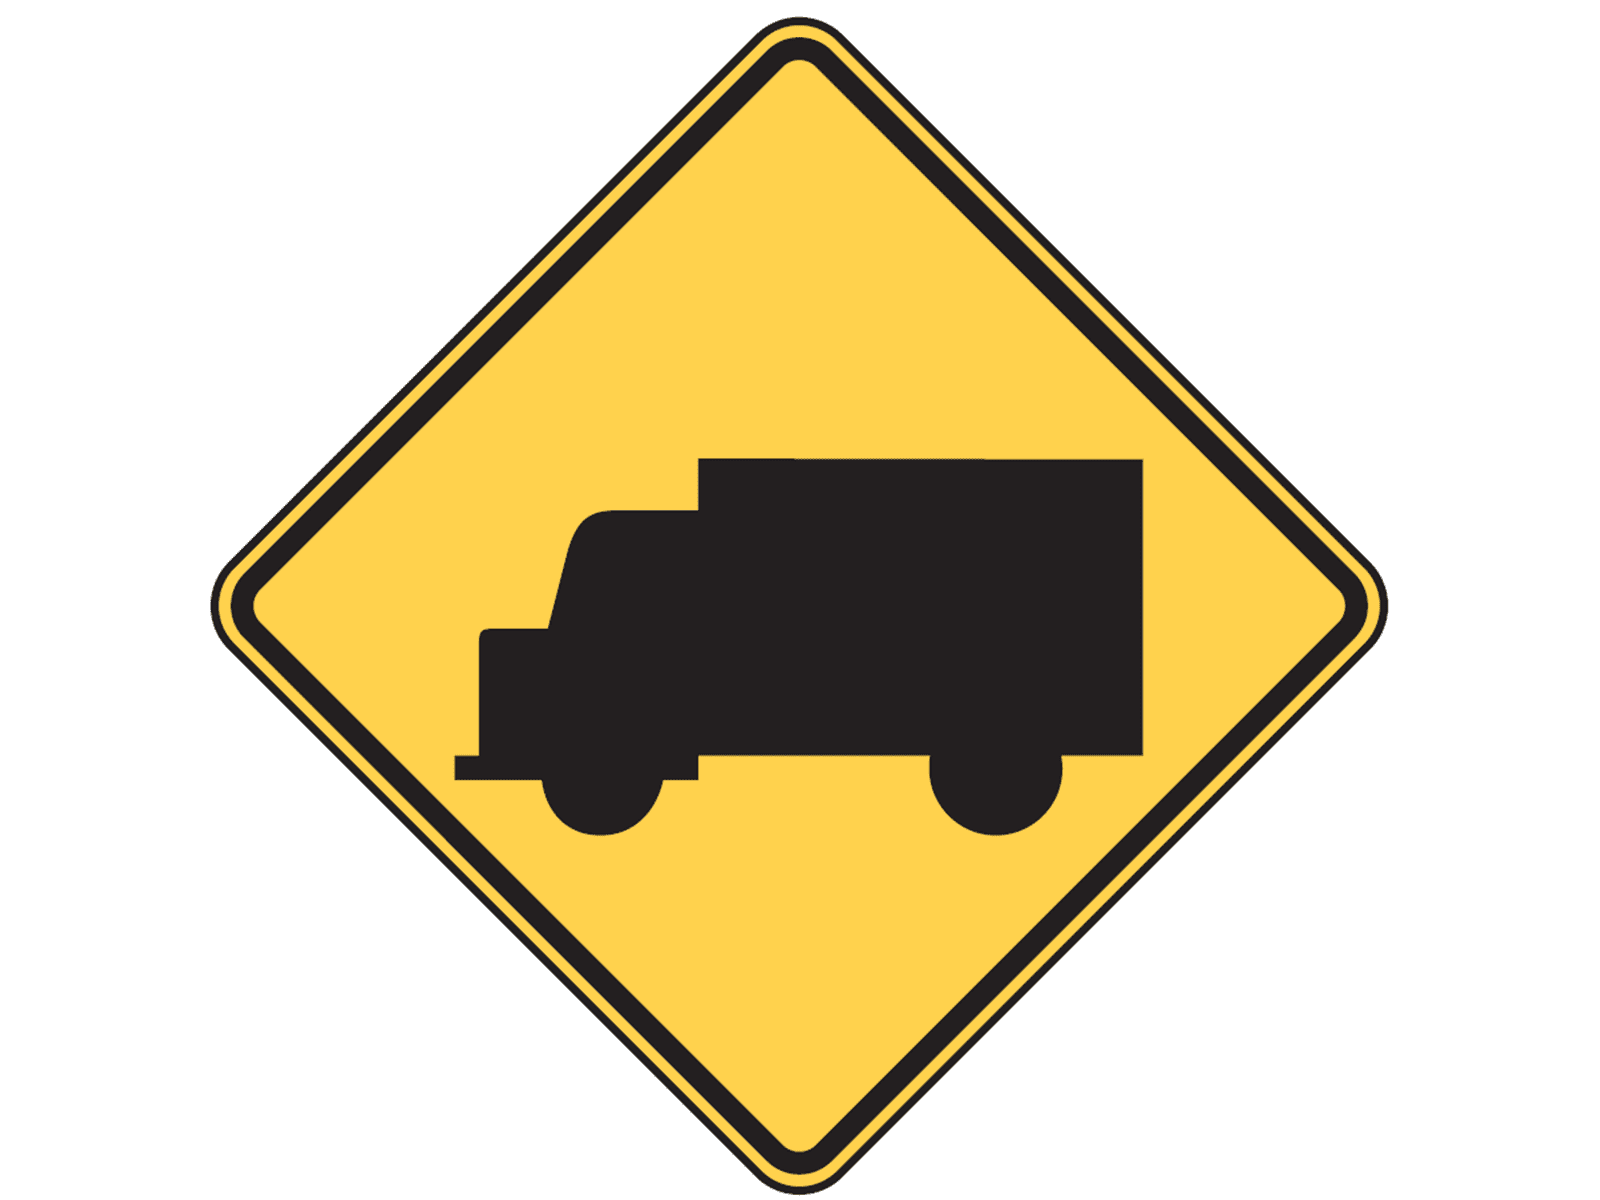 Truck W11-10 - W11: Vehicles